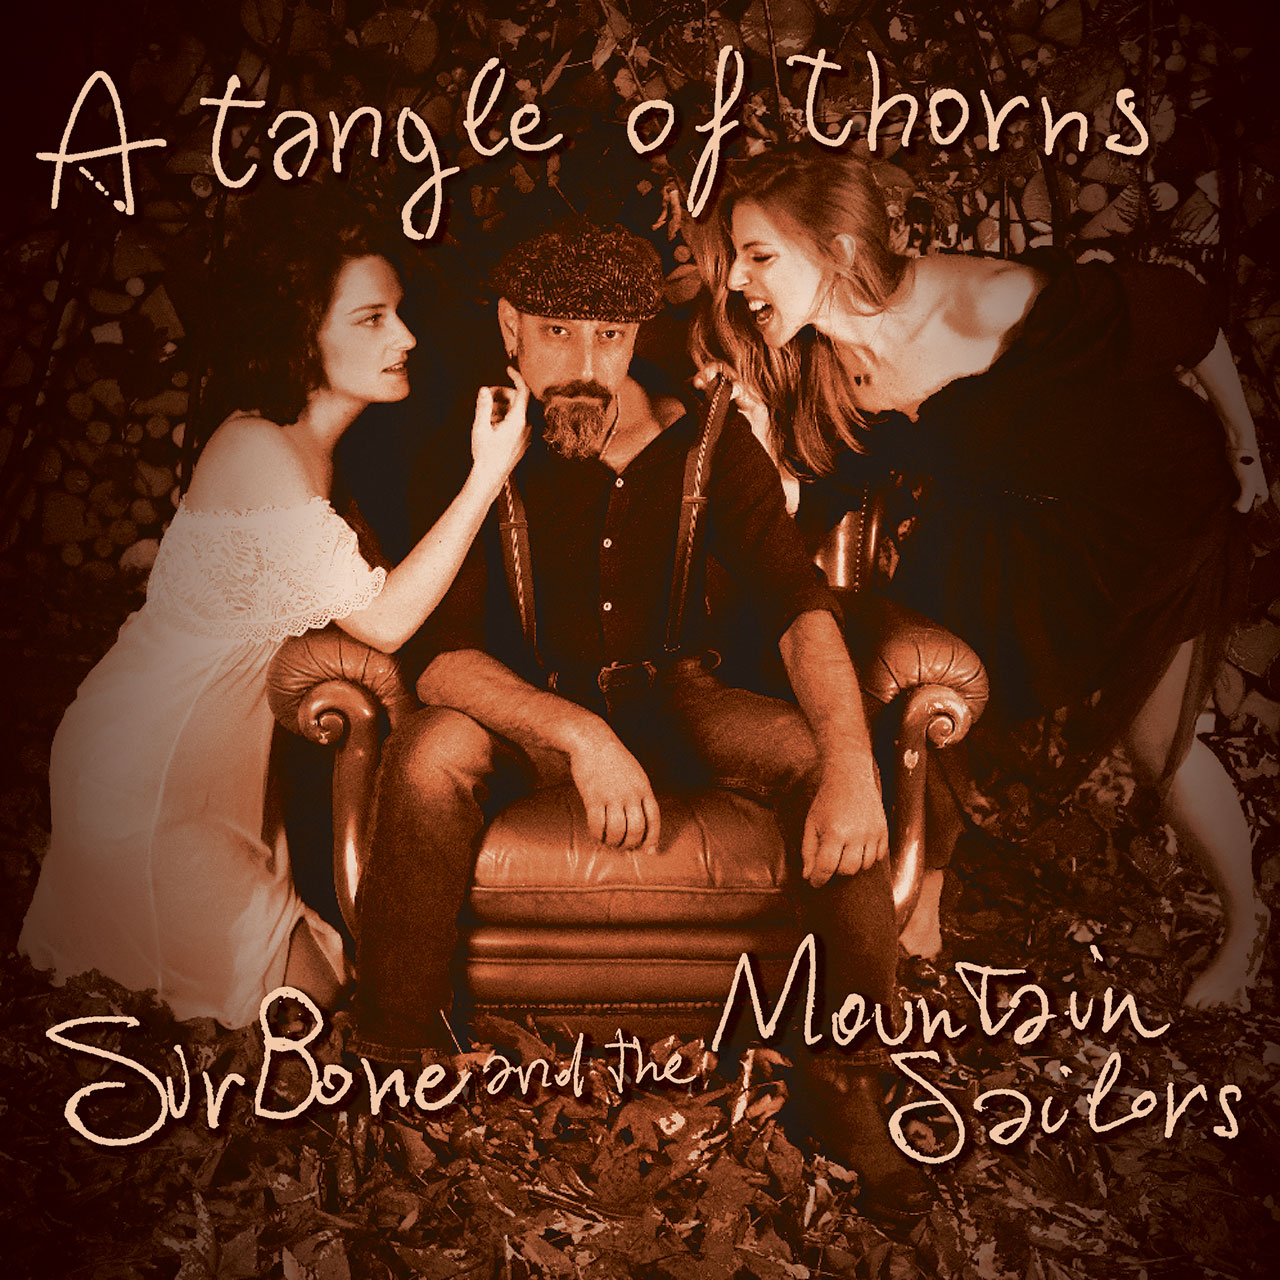 La cover di "A Tangle Of Thorns" il nuovo singolo di SirBone & The Mountain Sailors